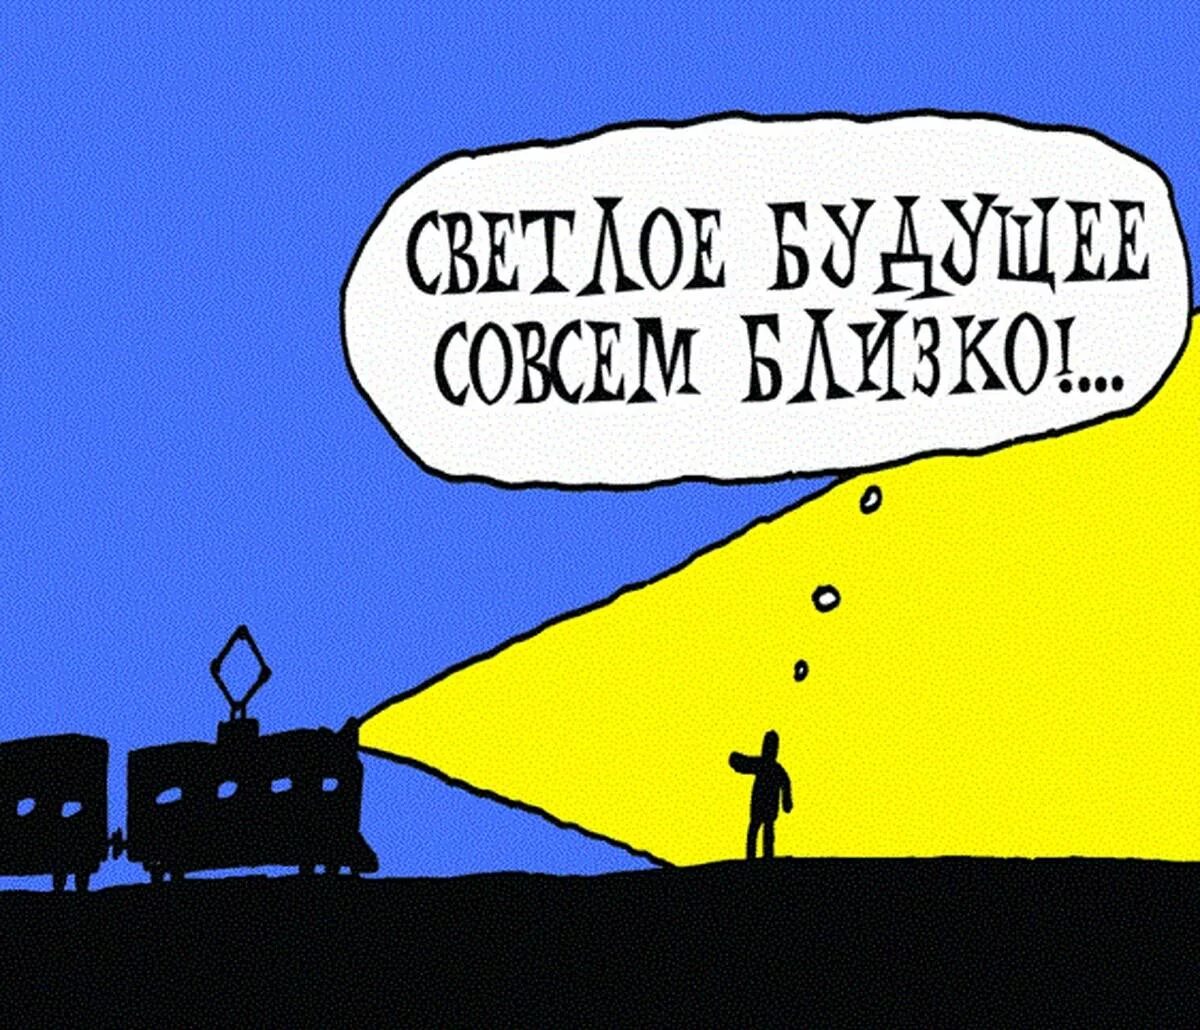 Печальный хохол. Будущее карикатура. Светлое будущее карикатура. Светлое будущее Украины. Светлое будущее юмор.